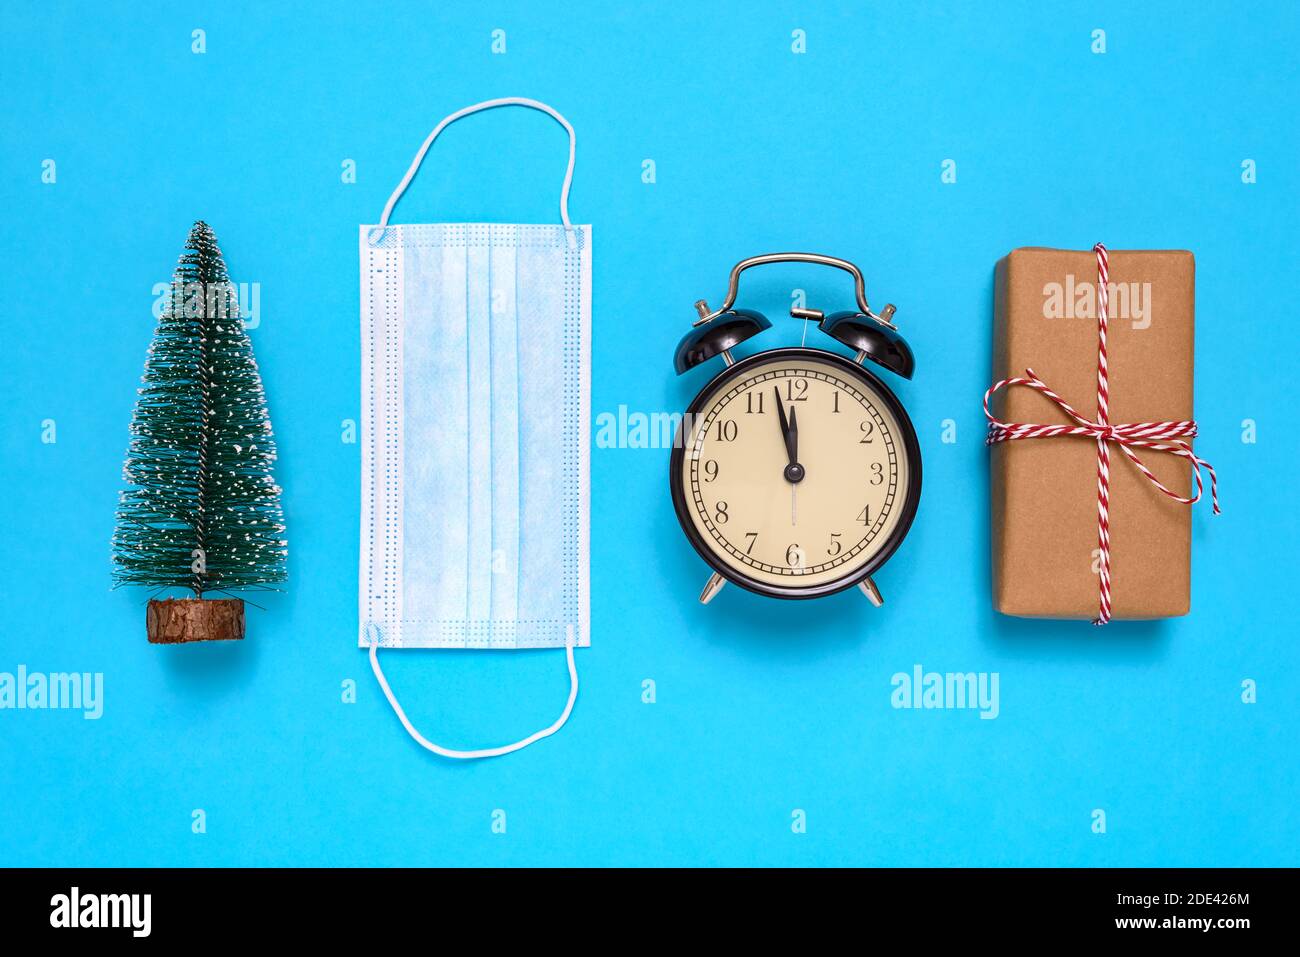 Kleiner Weihnachtsbaum, Geschenkbox, Wecker, Schutzmaske auf blauem Hintergrund. Stockfoto